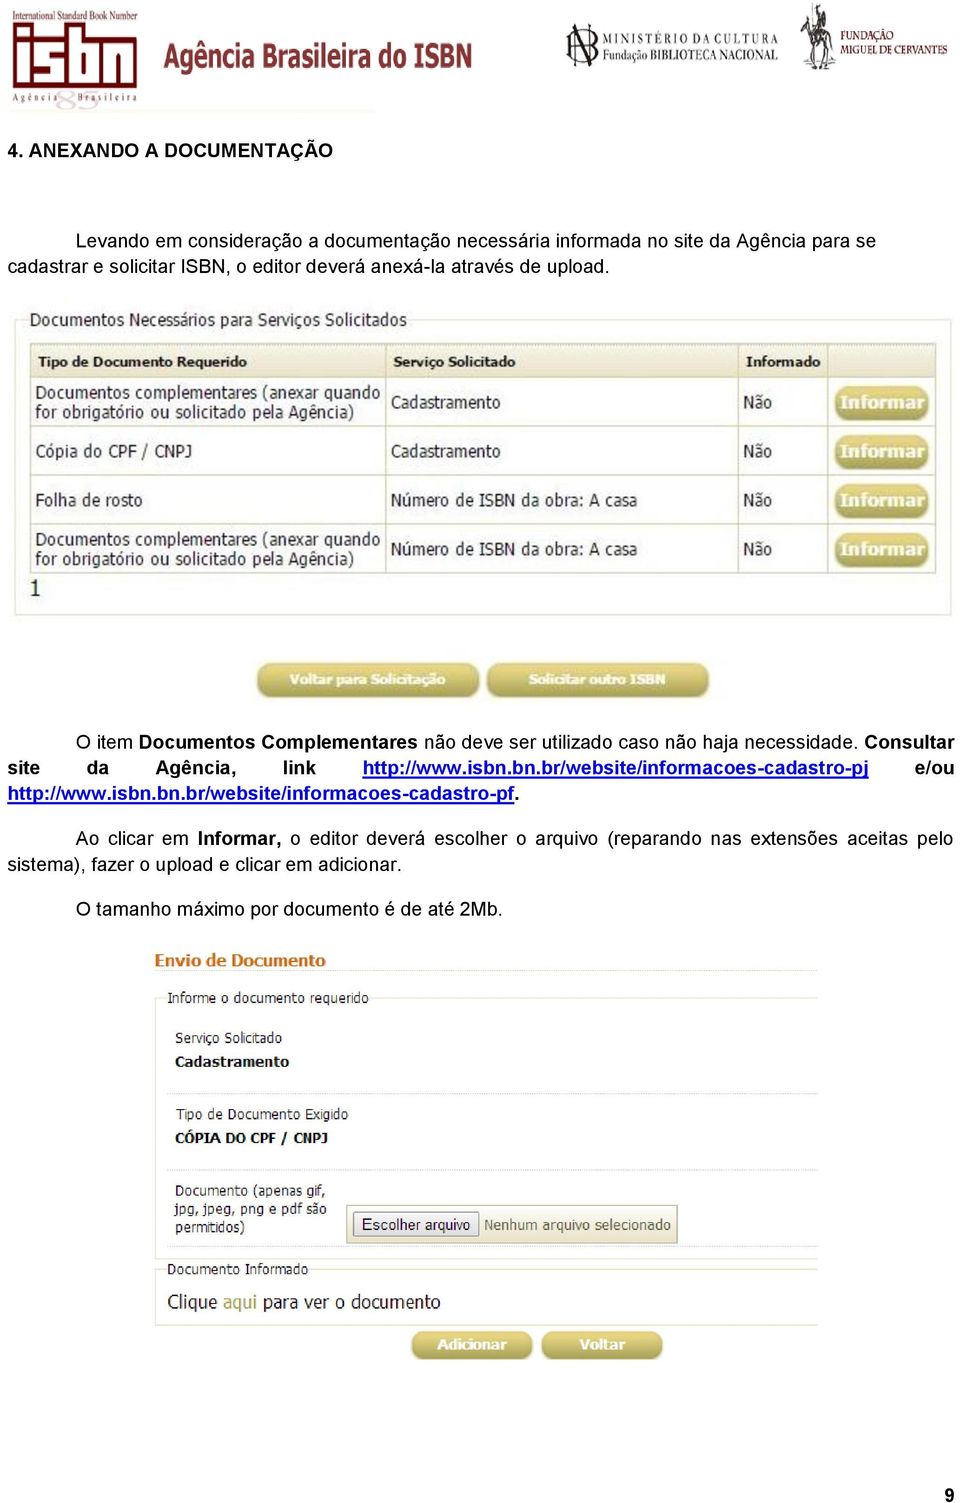 Consultar site da Agência, link http://www.isbn.bn.br/website/informacoes-cadastro-pj e/ou http://www.isbn.bn.br/website/informacoes-cadastro-pf.